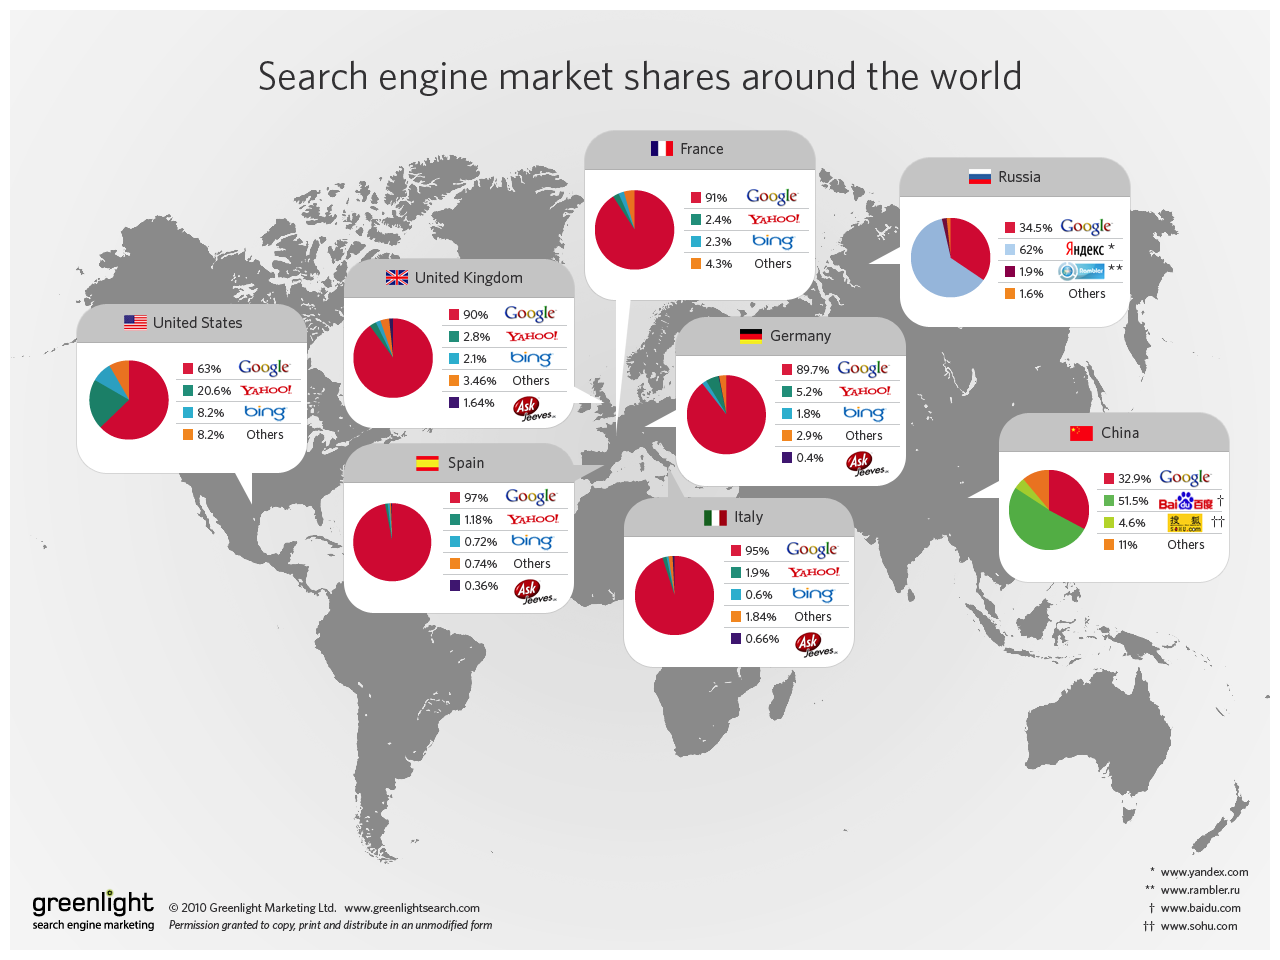 (Следующая инфографика показывает данные об объемах использования поисковых систем в мире, взятые из   эта статья   )